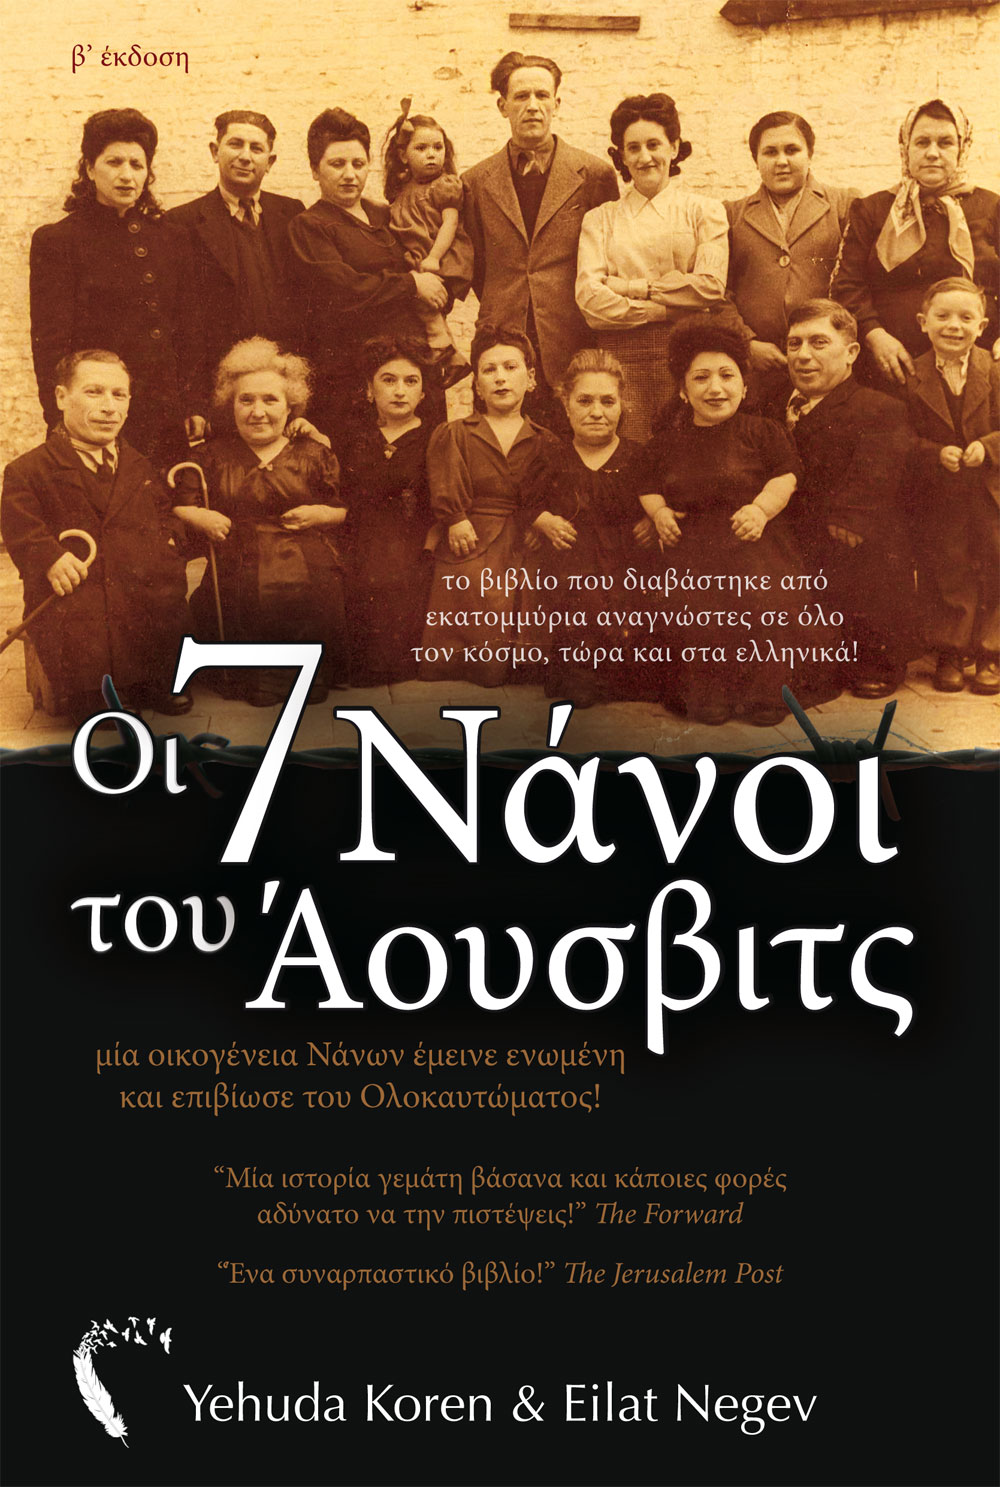 Εξώφυλλο, Οι 7 Νάνοι του Άουσβιτς, Εκδόσεις Πηγή